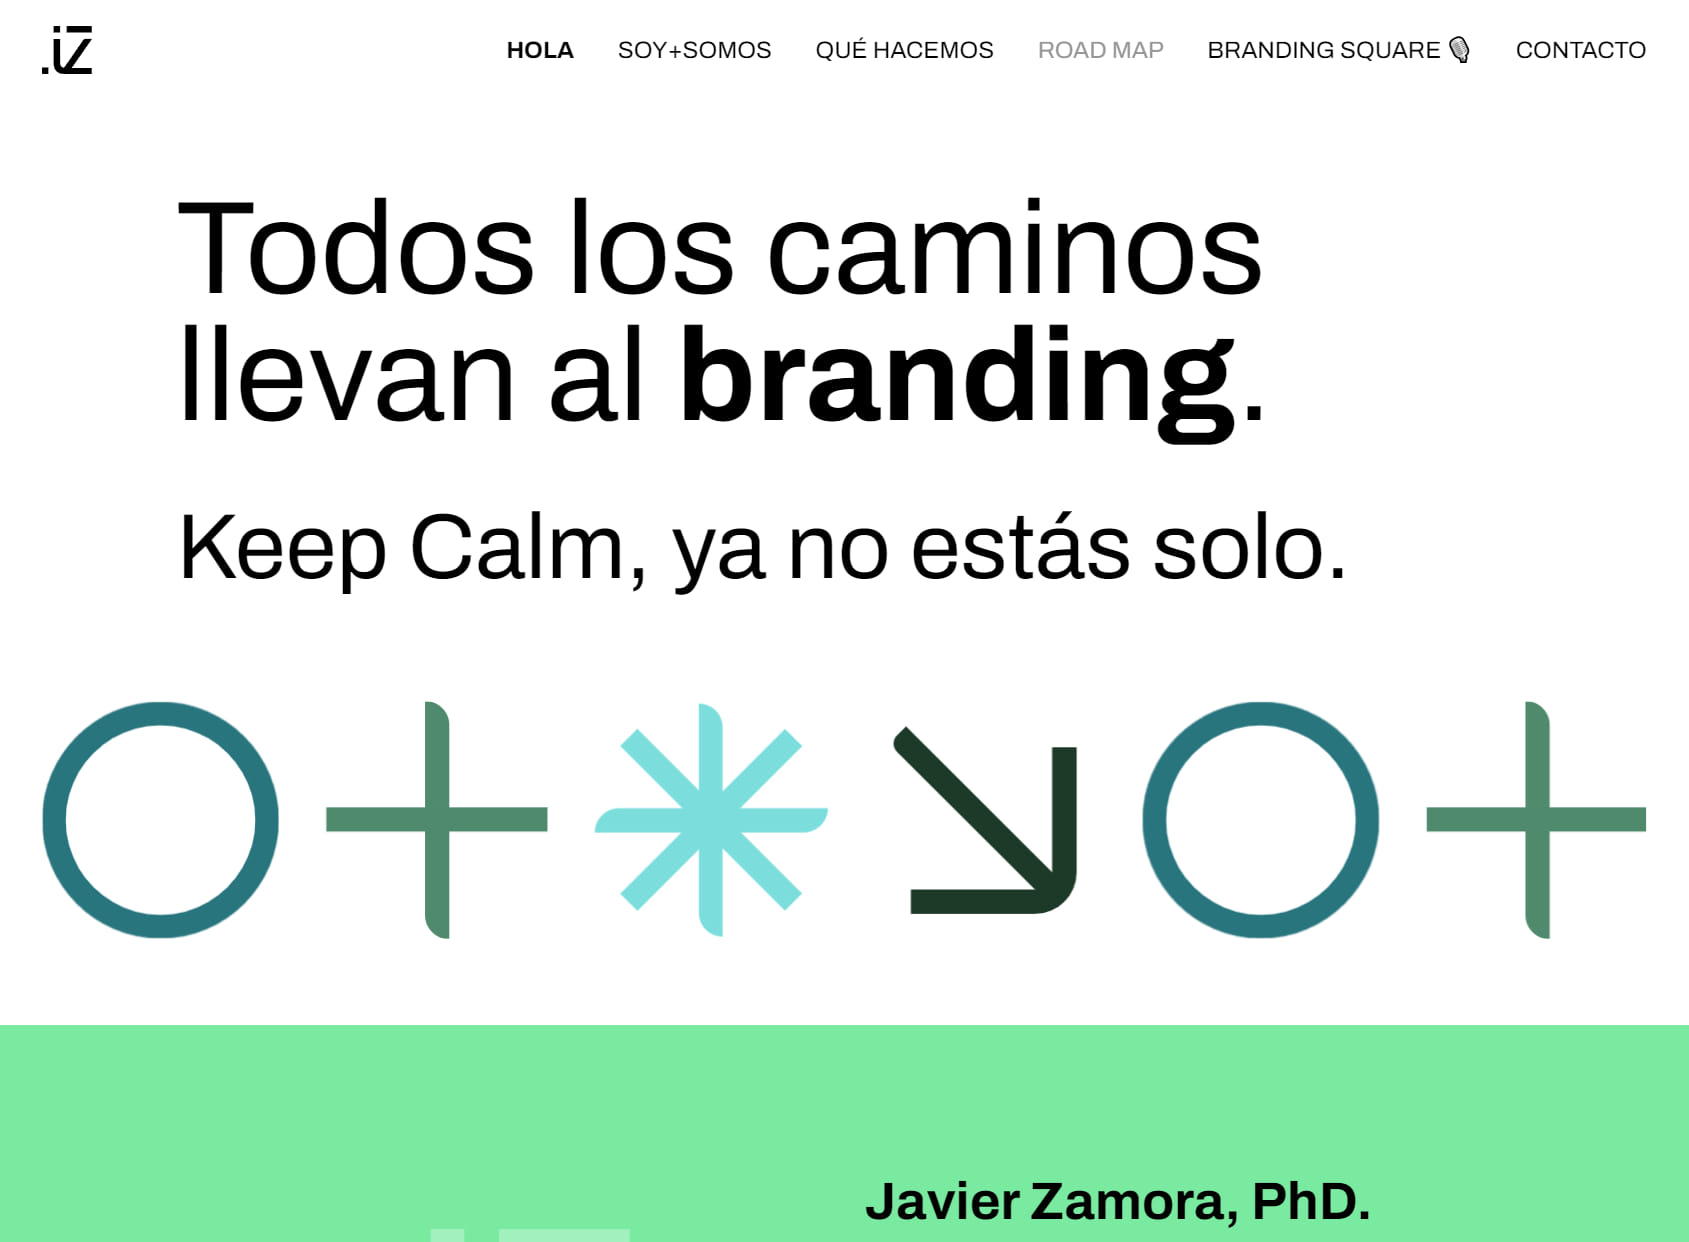 Javier Zamora. Consultor en Branding y Marketing Estratégico.